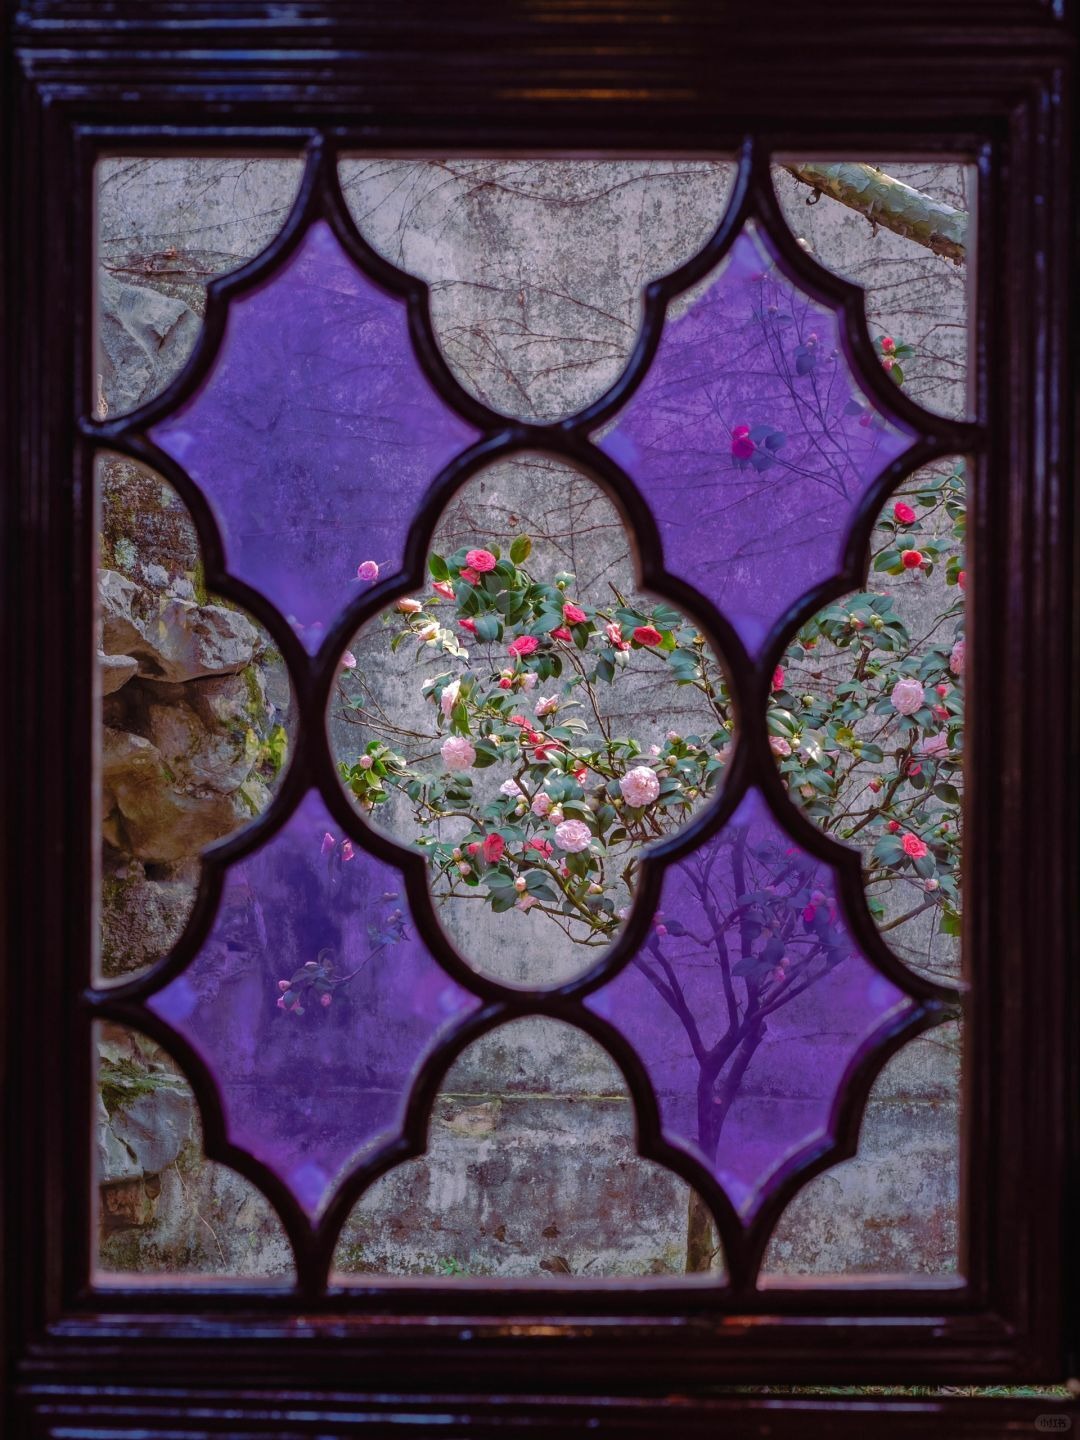 蘇州園林花窗